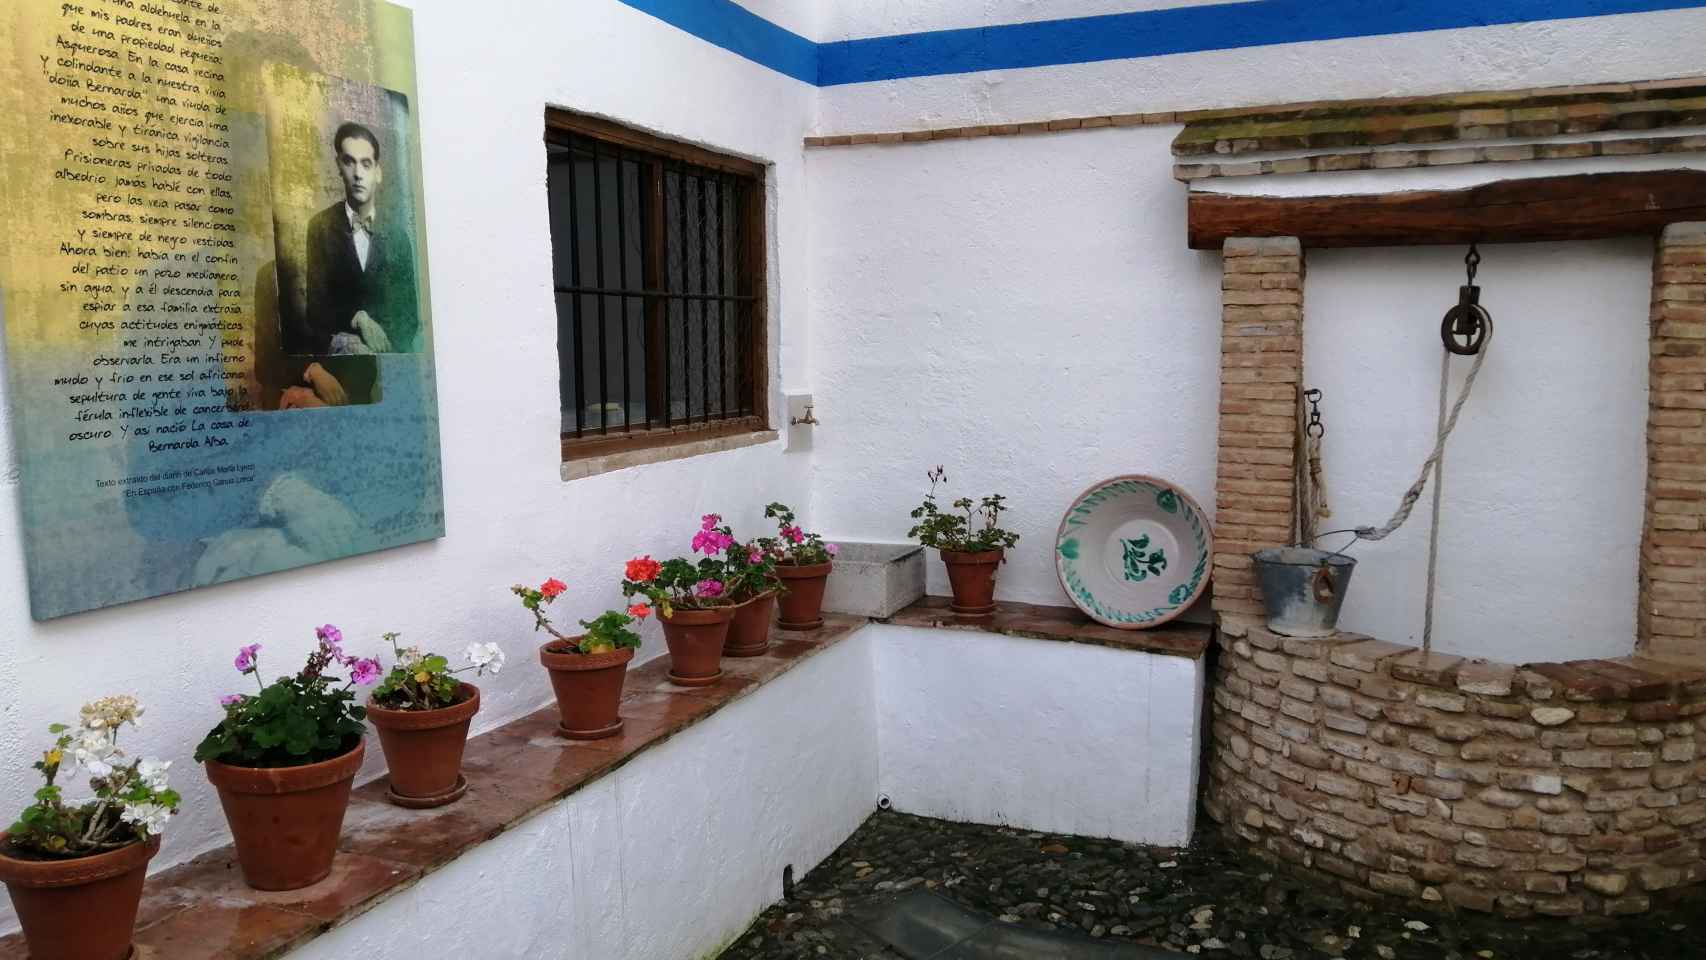 El pozo medianero de la casa de Valderrubio que inspiró el drama de 'La casa de Bernarda Alba', colindante con la casa de la tía de Federico.